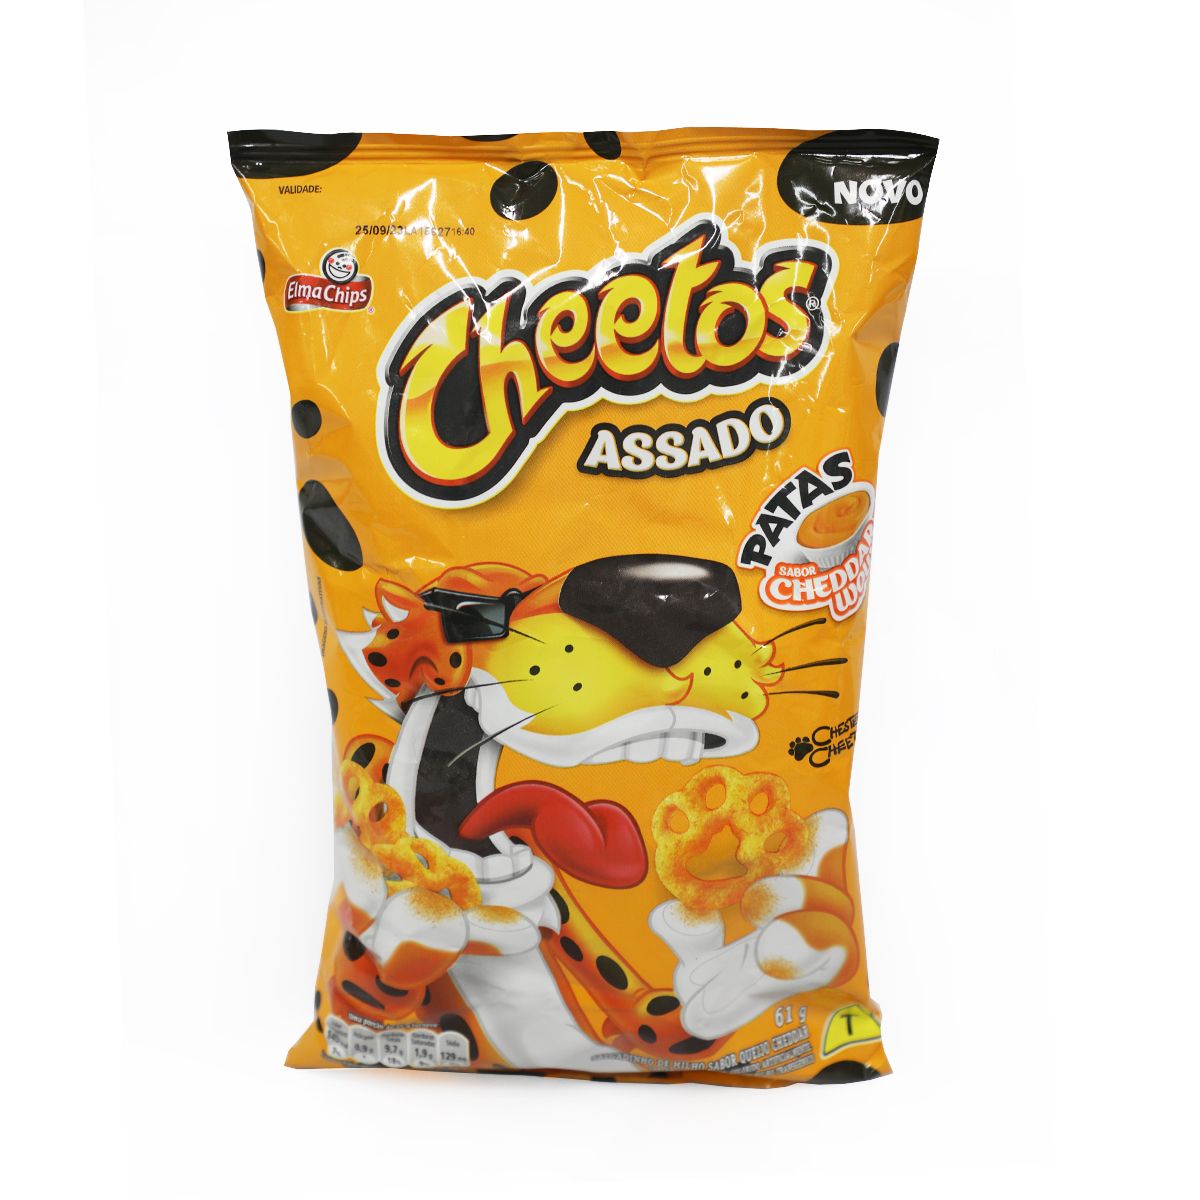 Comprar Salgadinho Lua Parmesão Cheetos 40G Elma Chips